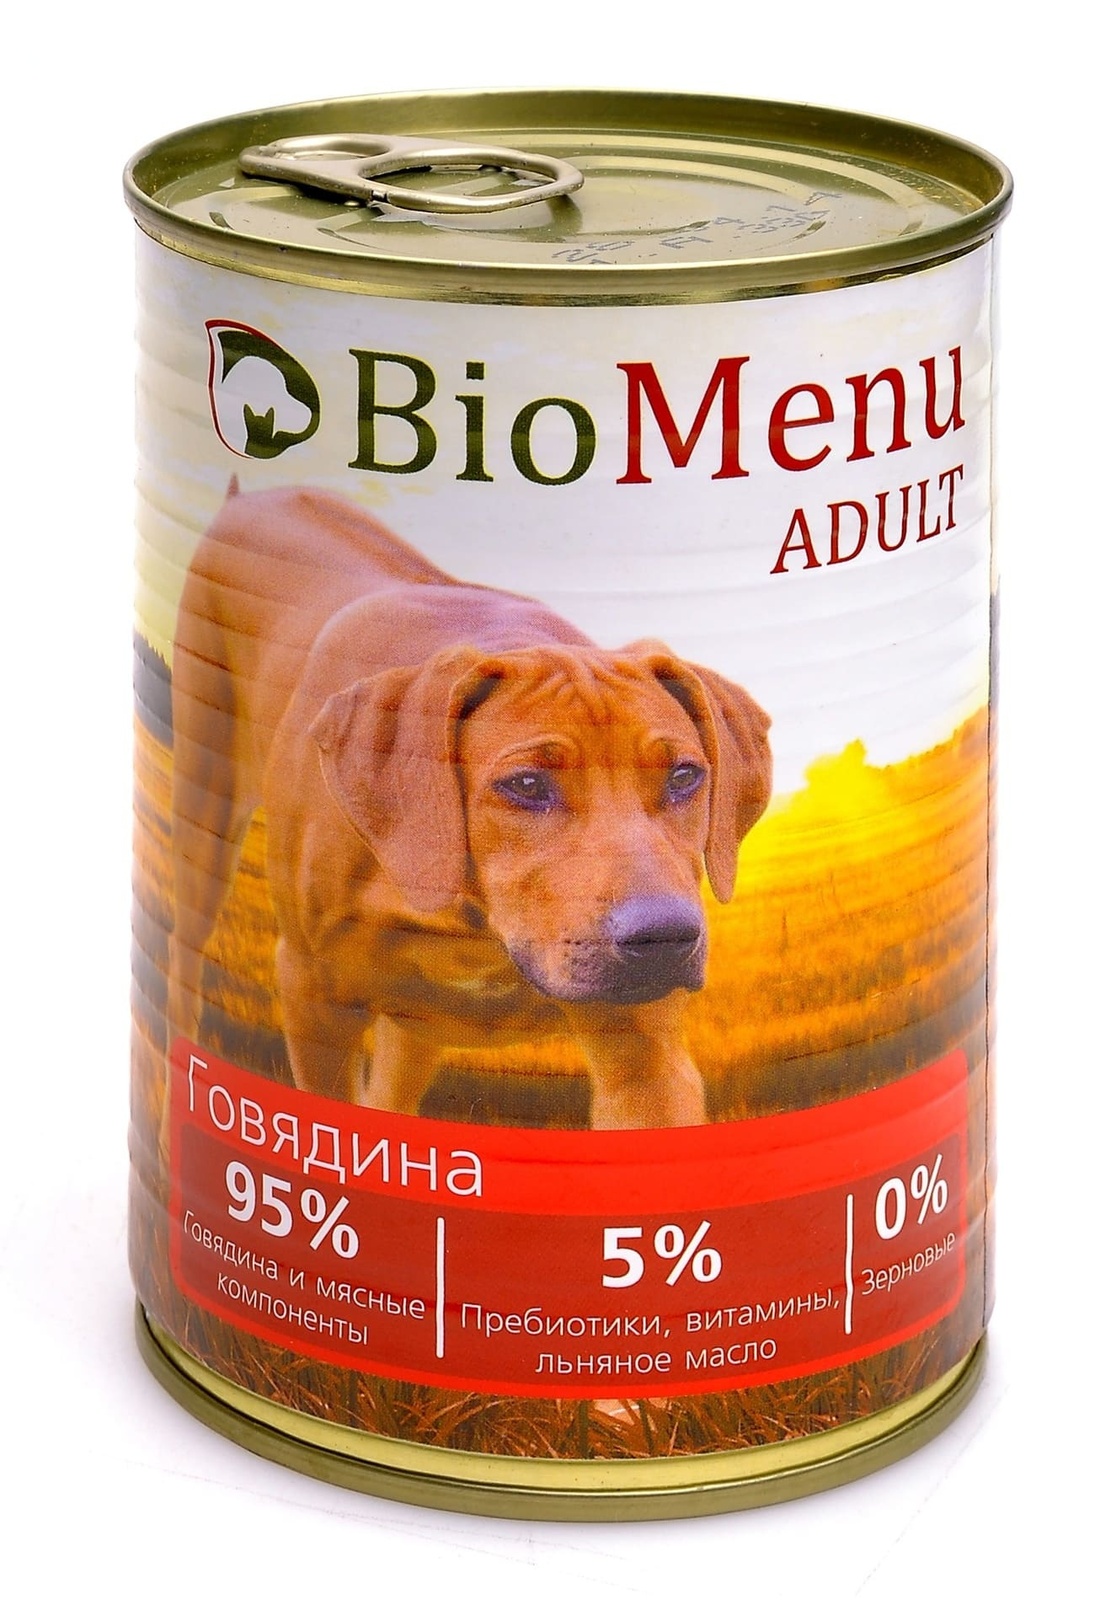 BioMenu BioMenu консервы для собак с говядиной (100 г) biomenu biomenu консервы для собак цыпленок с ананасом 100 г